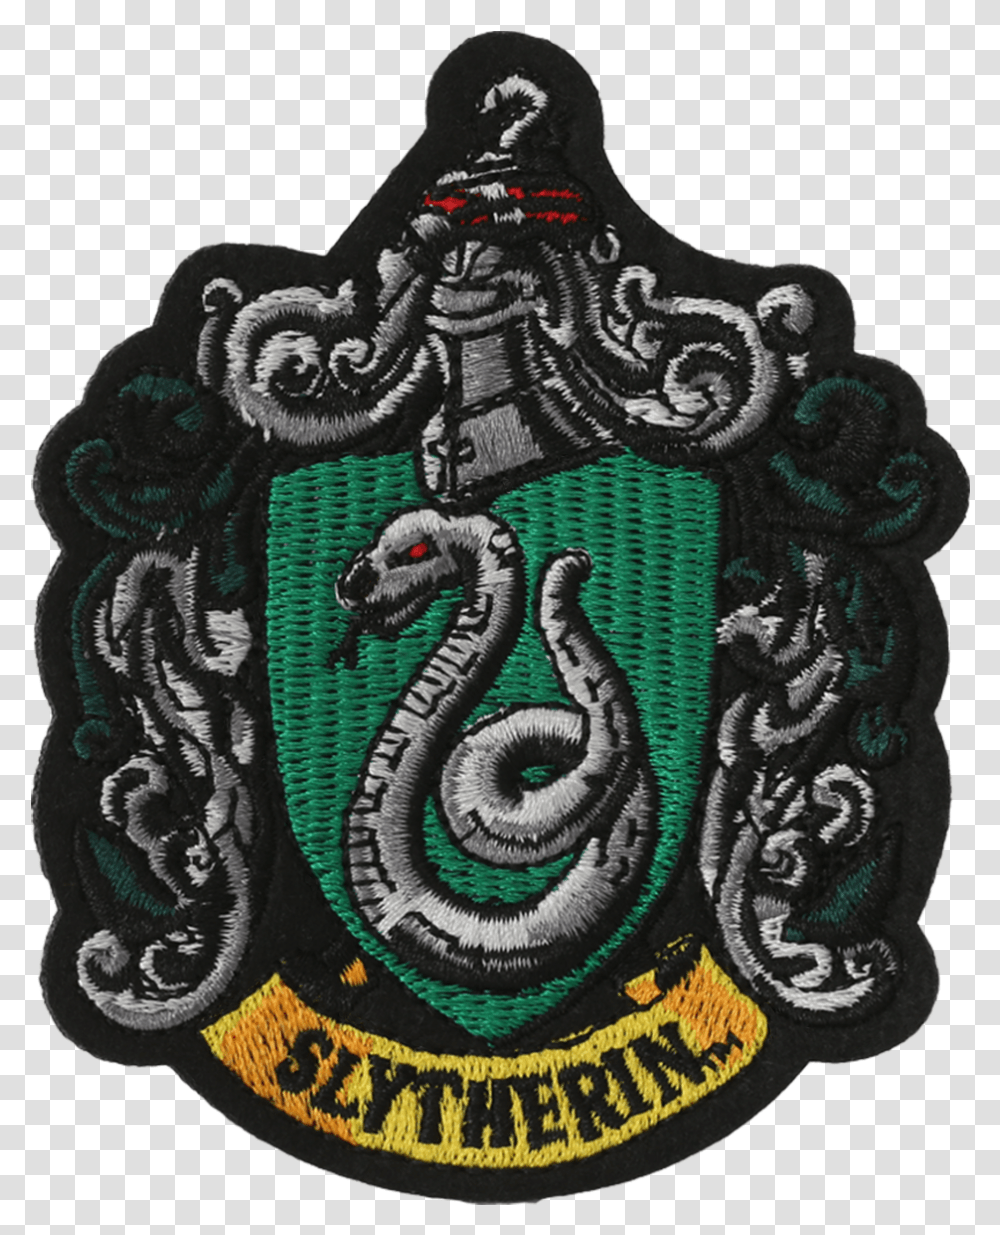 Harry Potter Slytherin Badge, Emblem, Rug, Armor Transparent Png